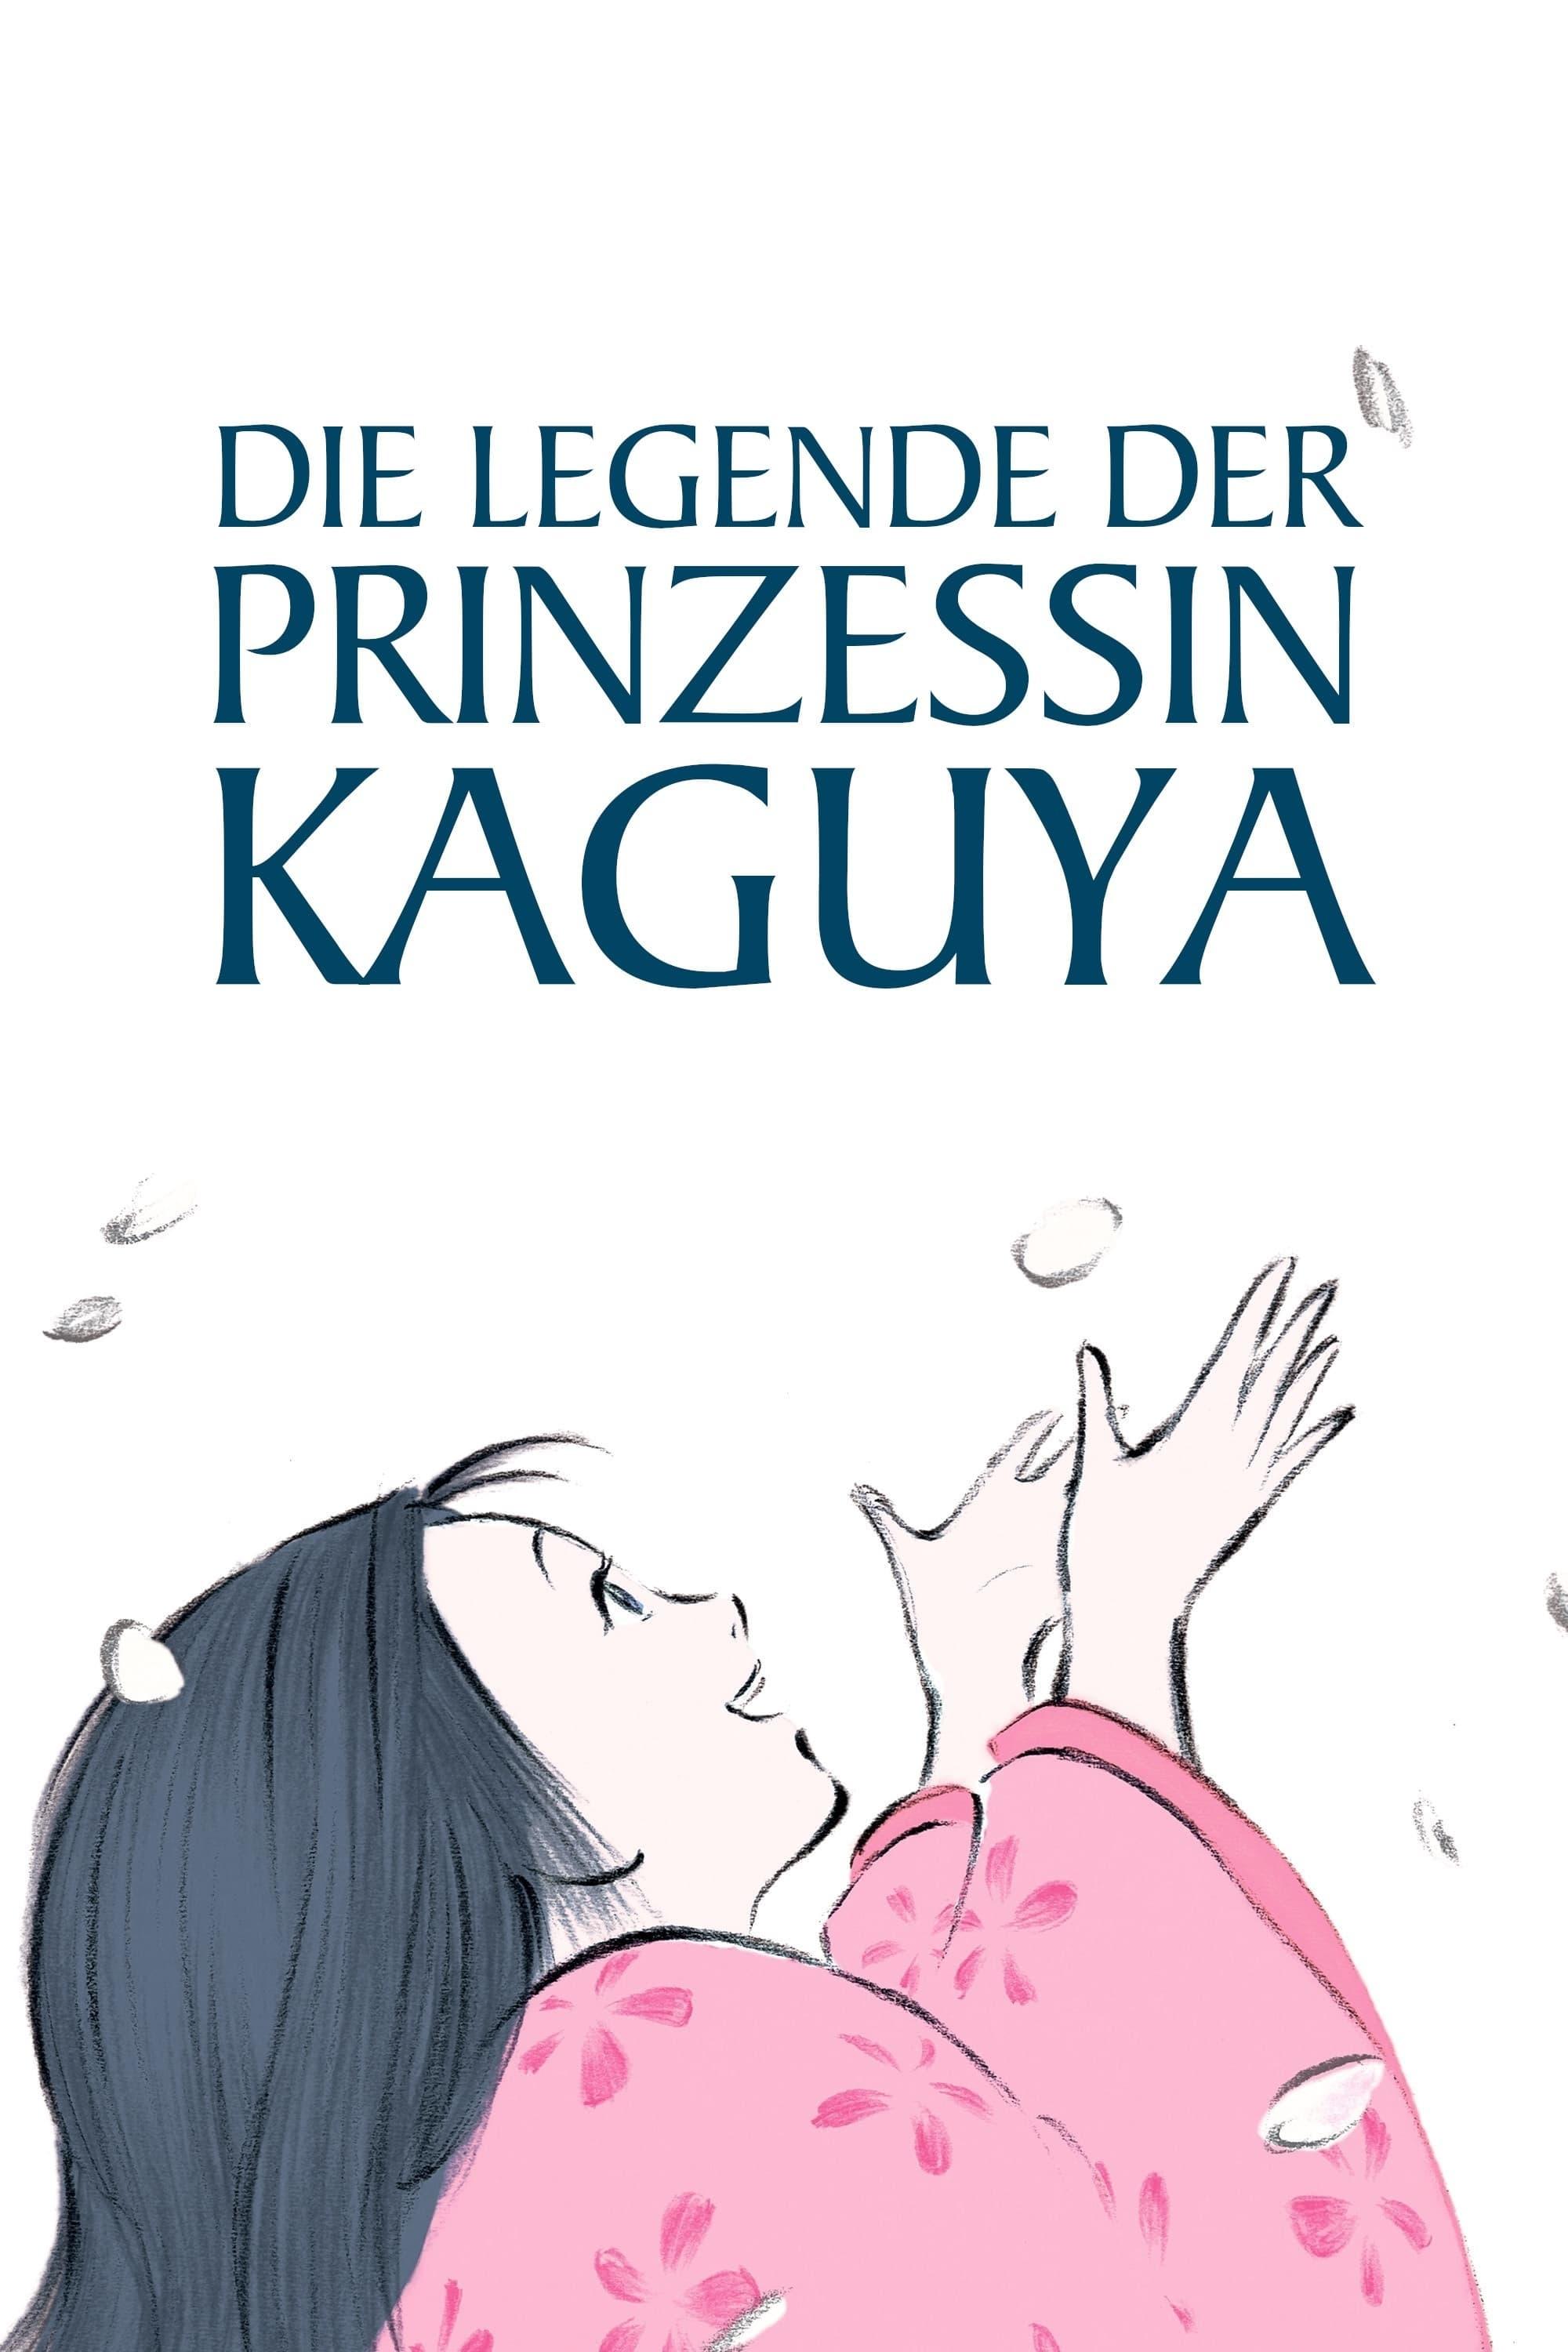 Die Legende der Prinzessin Kaguya poster